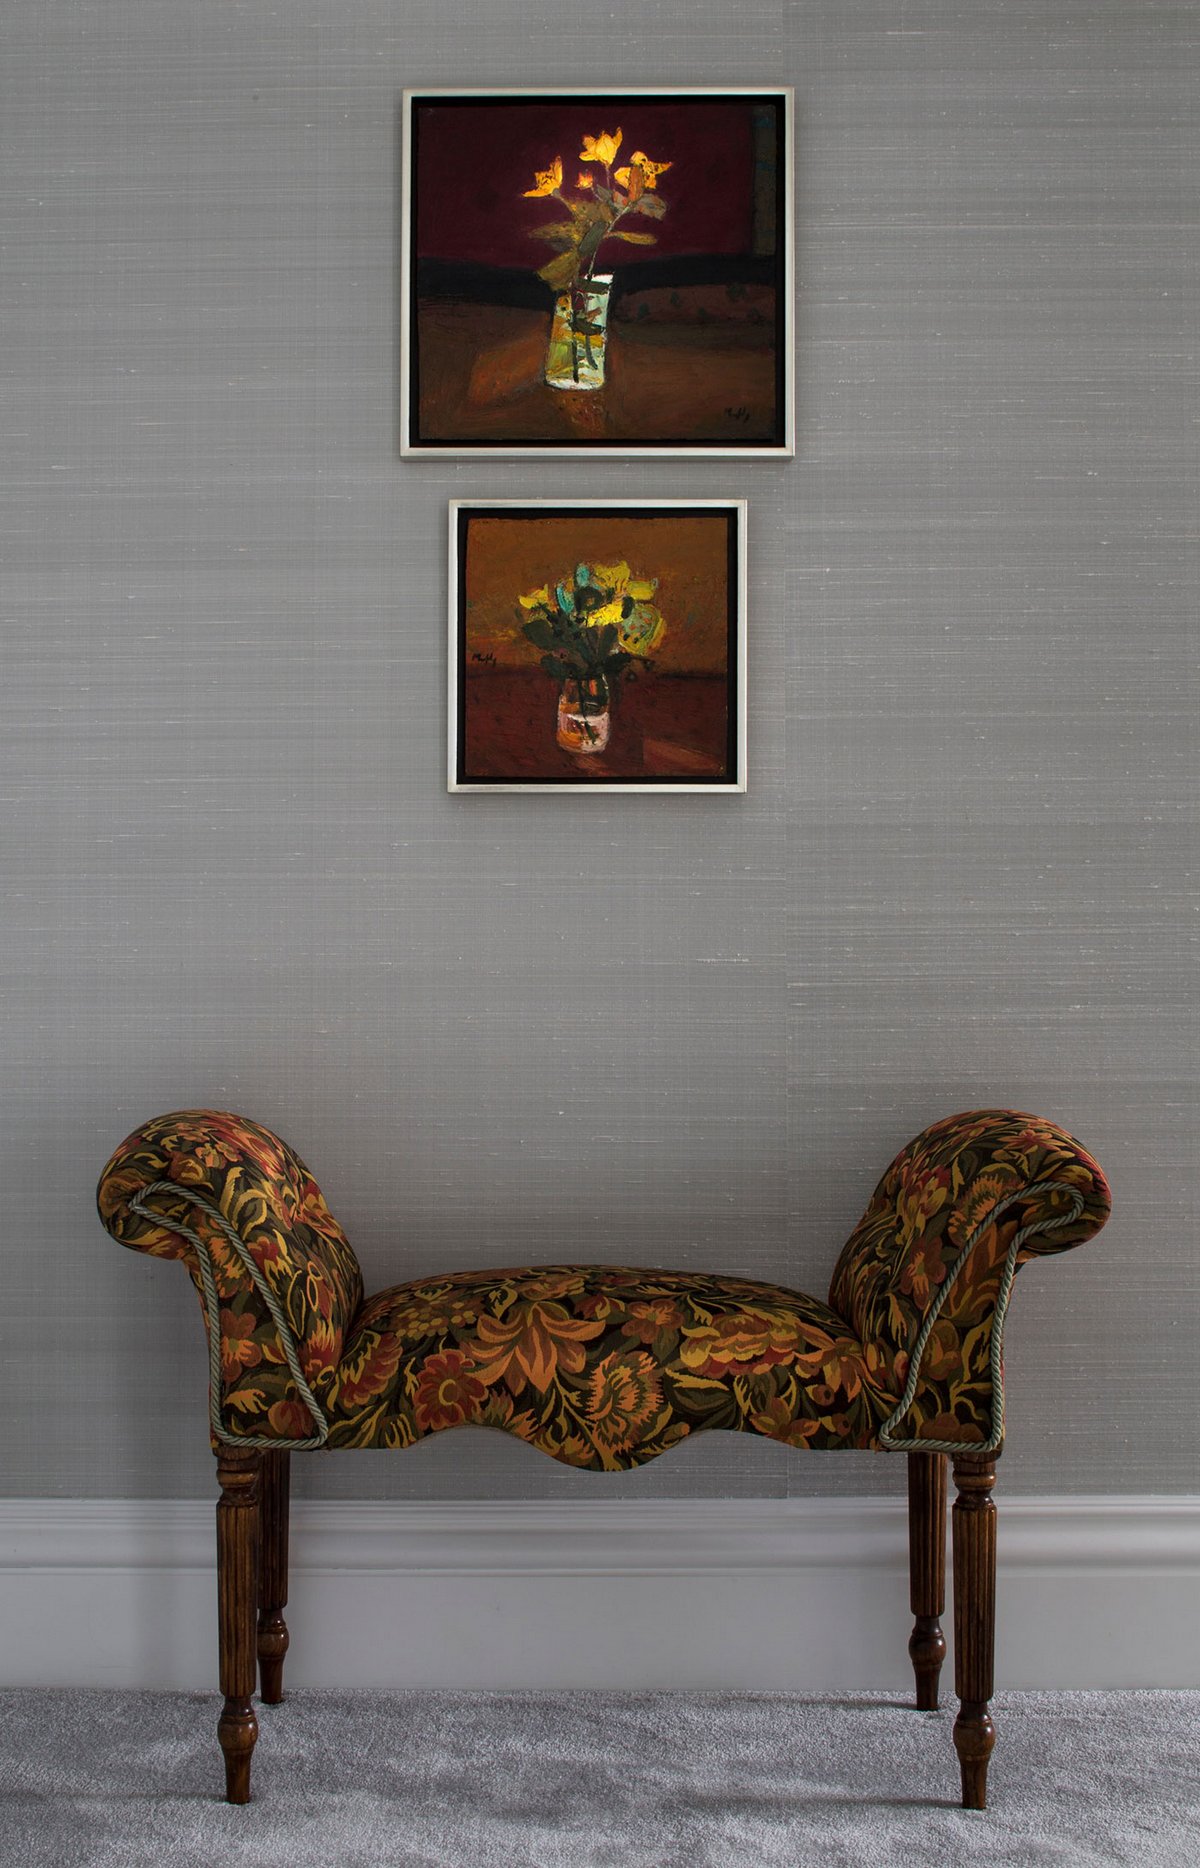 Roselind Wilson Design, квартира The Bromptons, классический интерьер квартиры, интерьер в классическом стиле, роскошная квартира в Лондоне фото